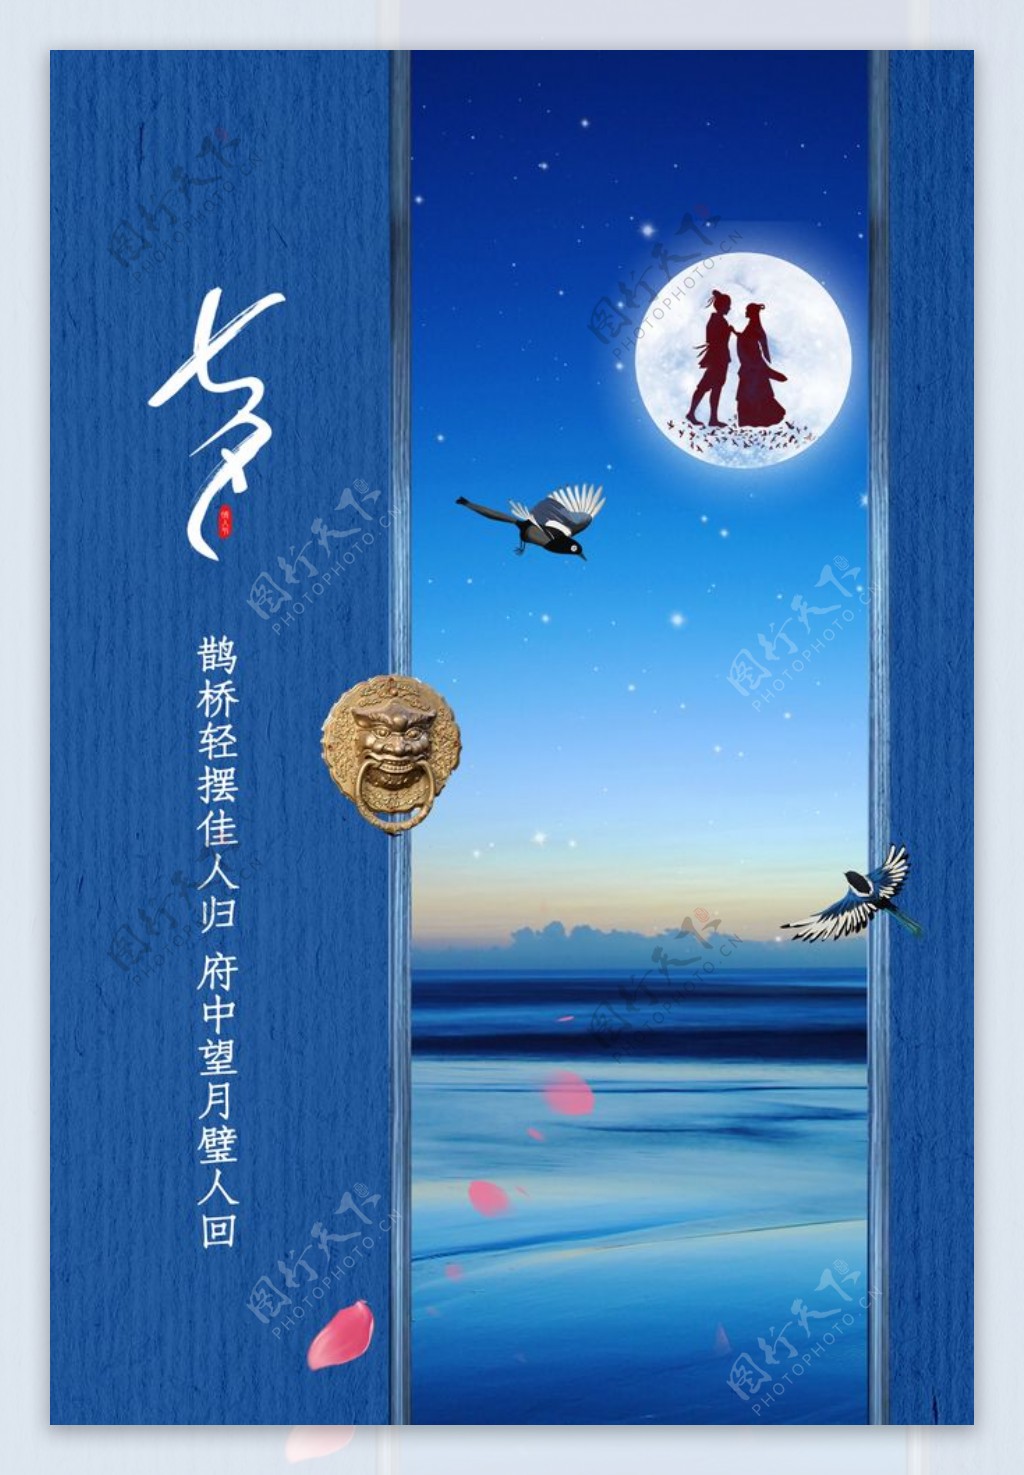 七夕节日传统宣传活动海报素材